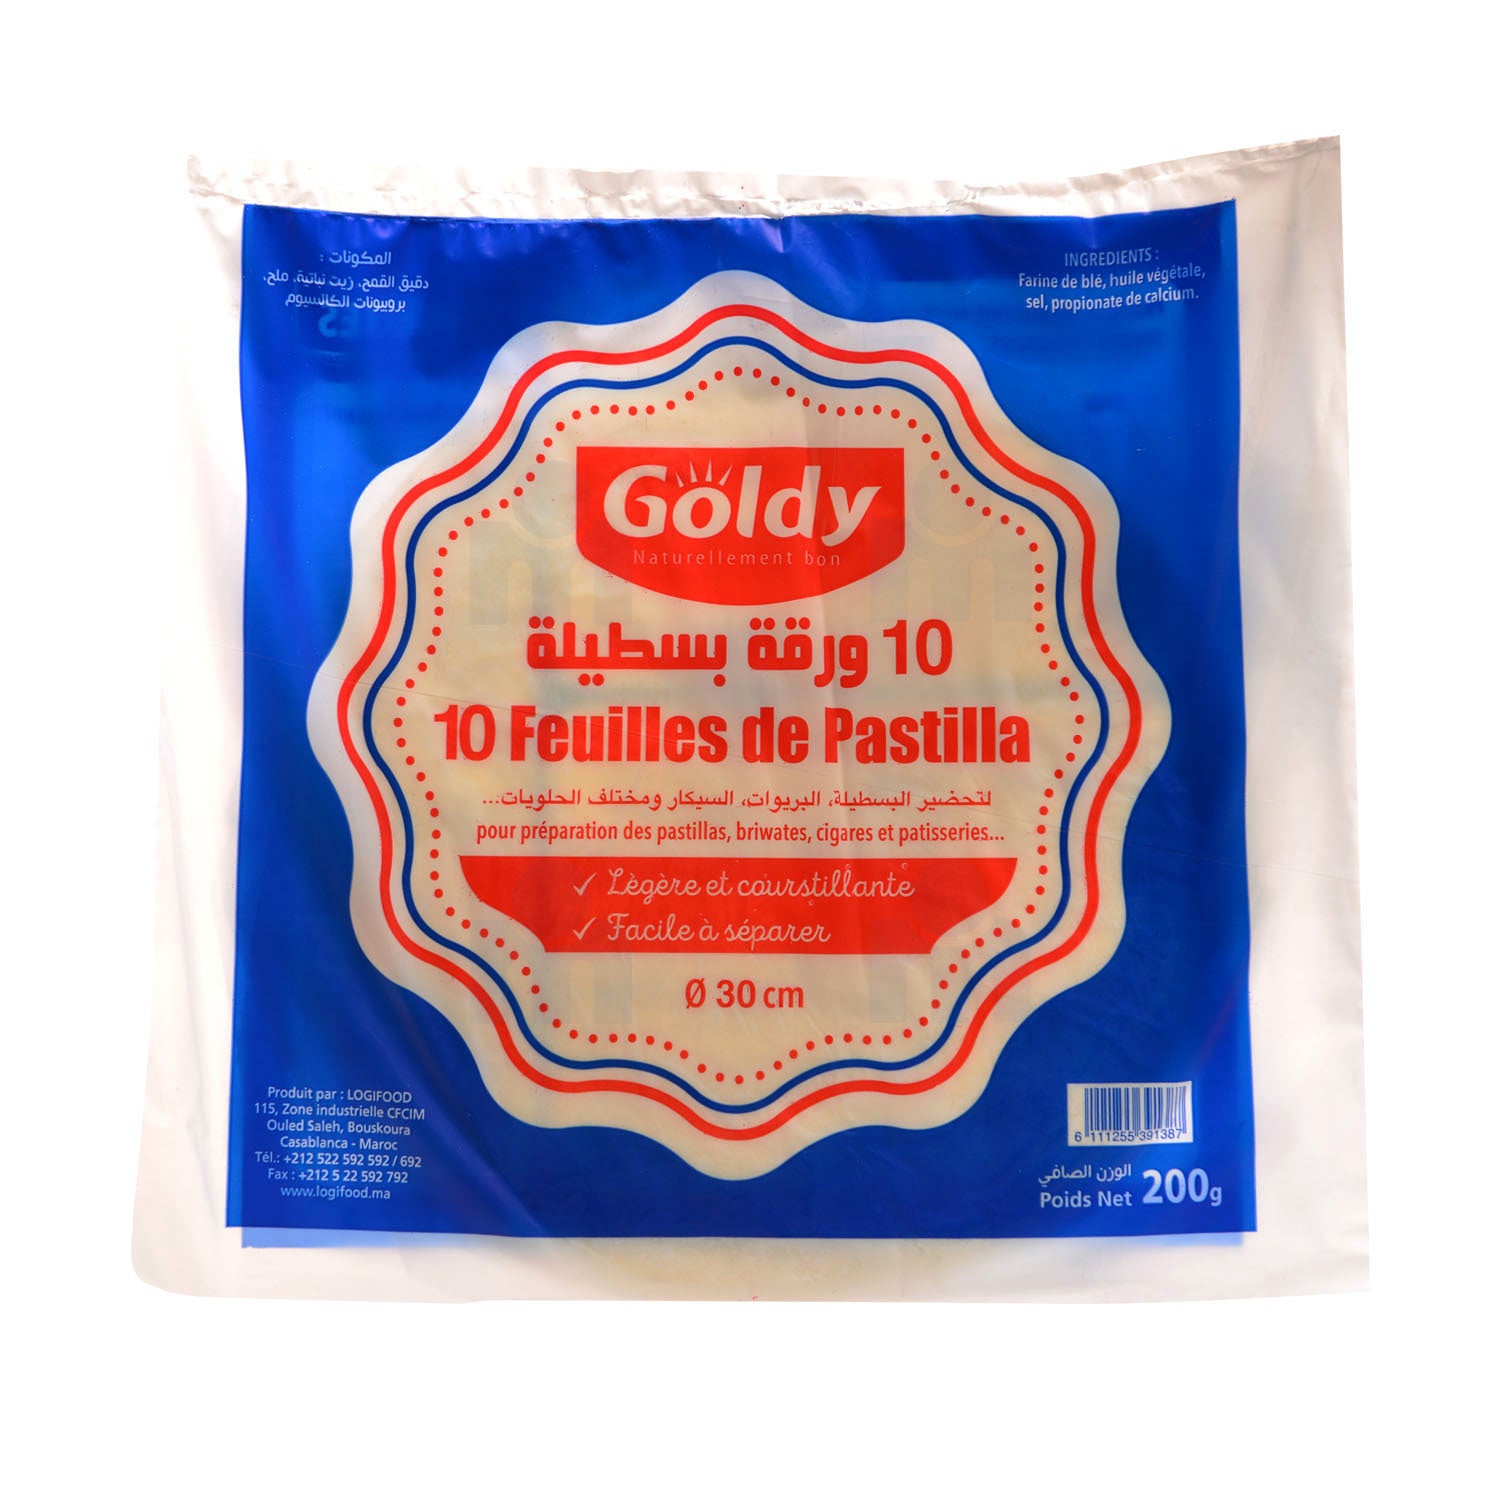 Pâte Feuilletée Surgelée Goldy 500 g